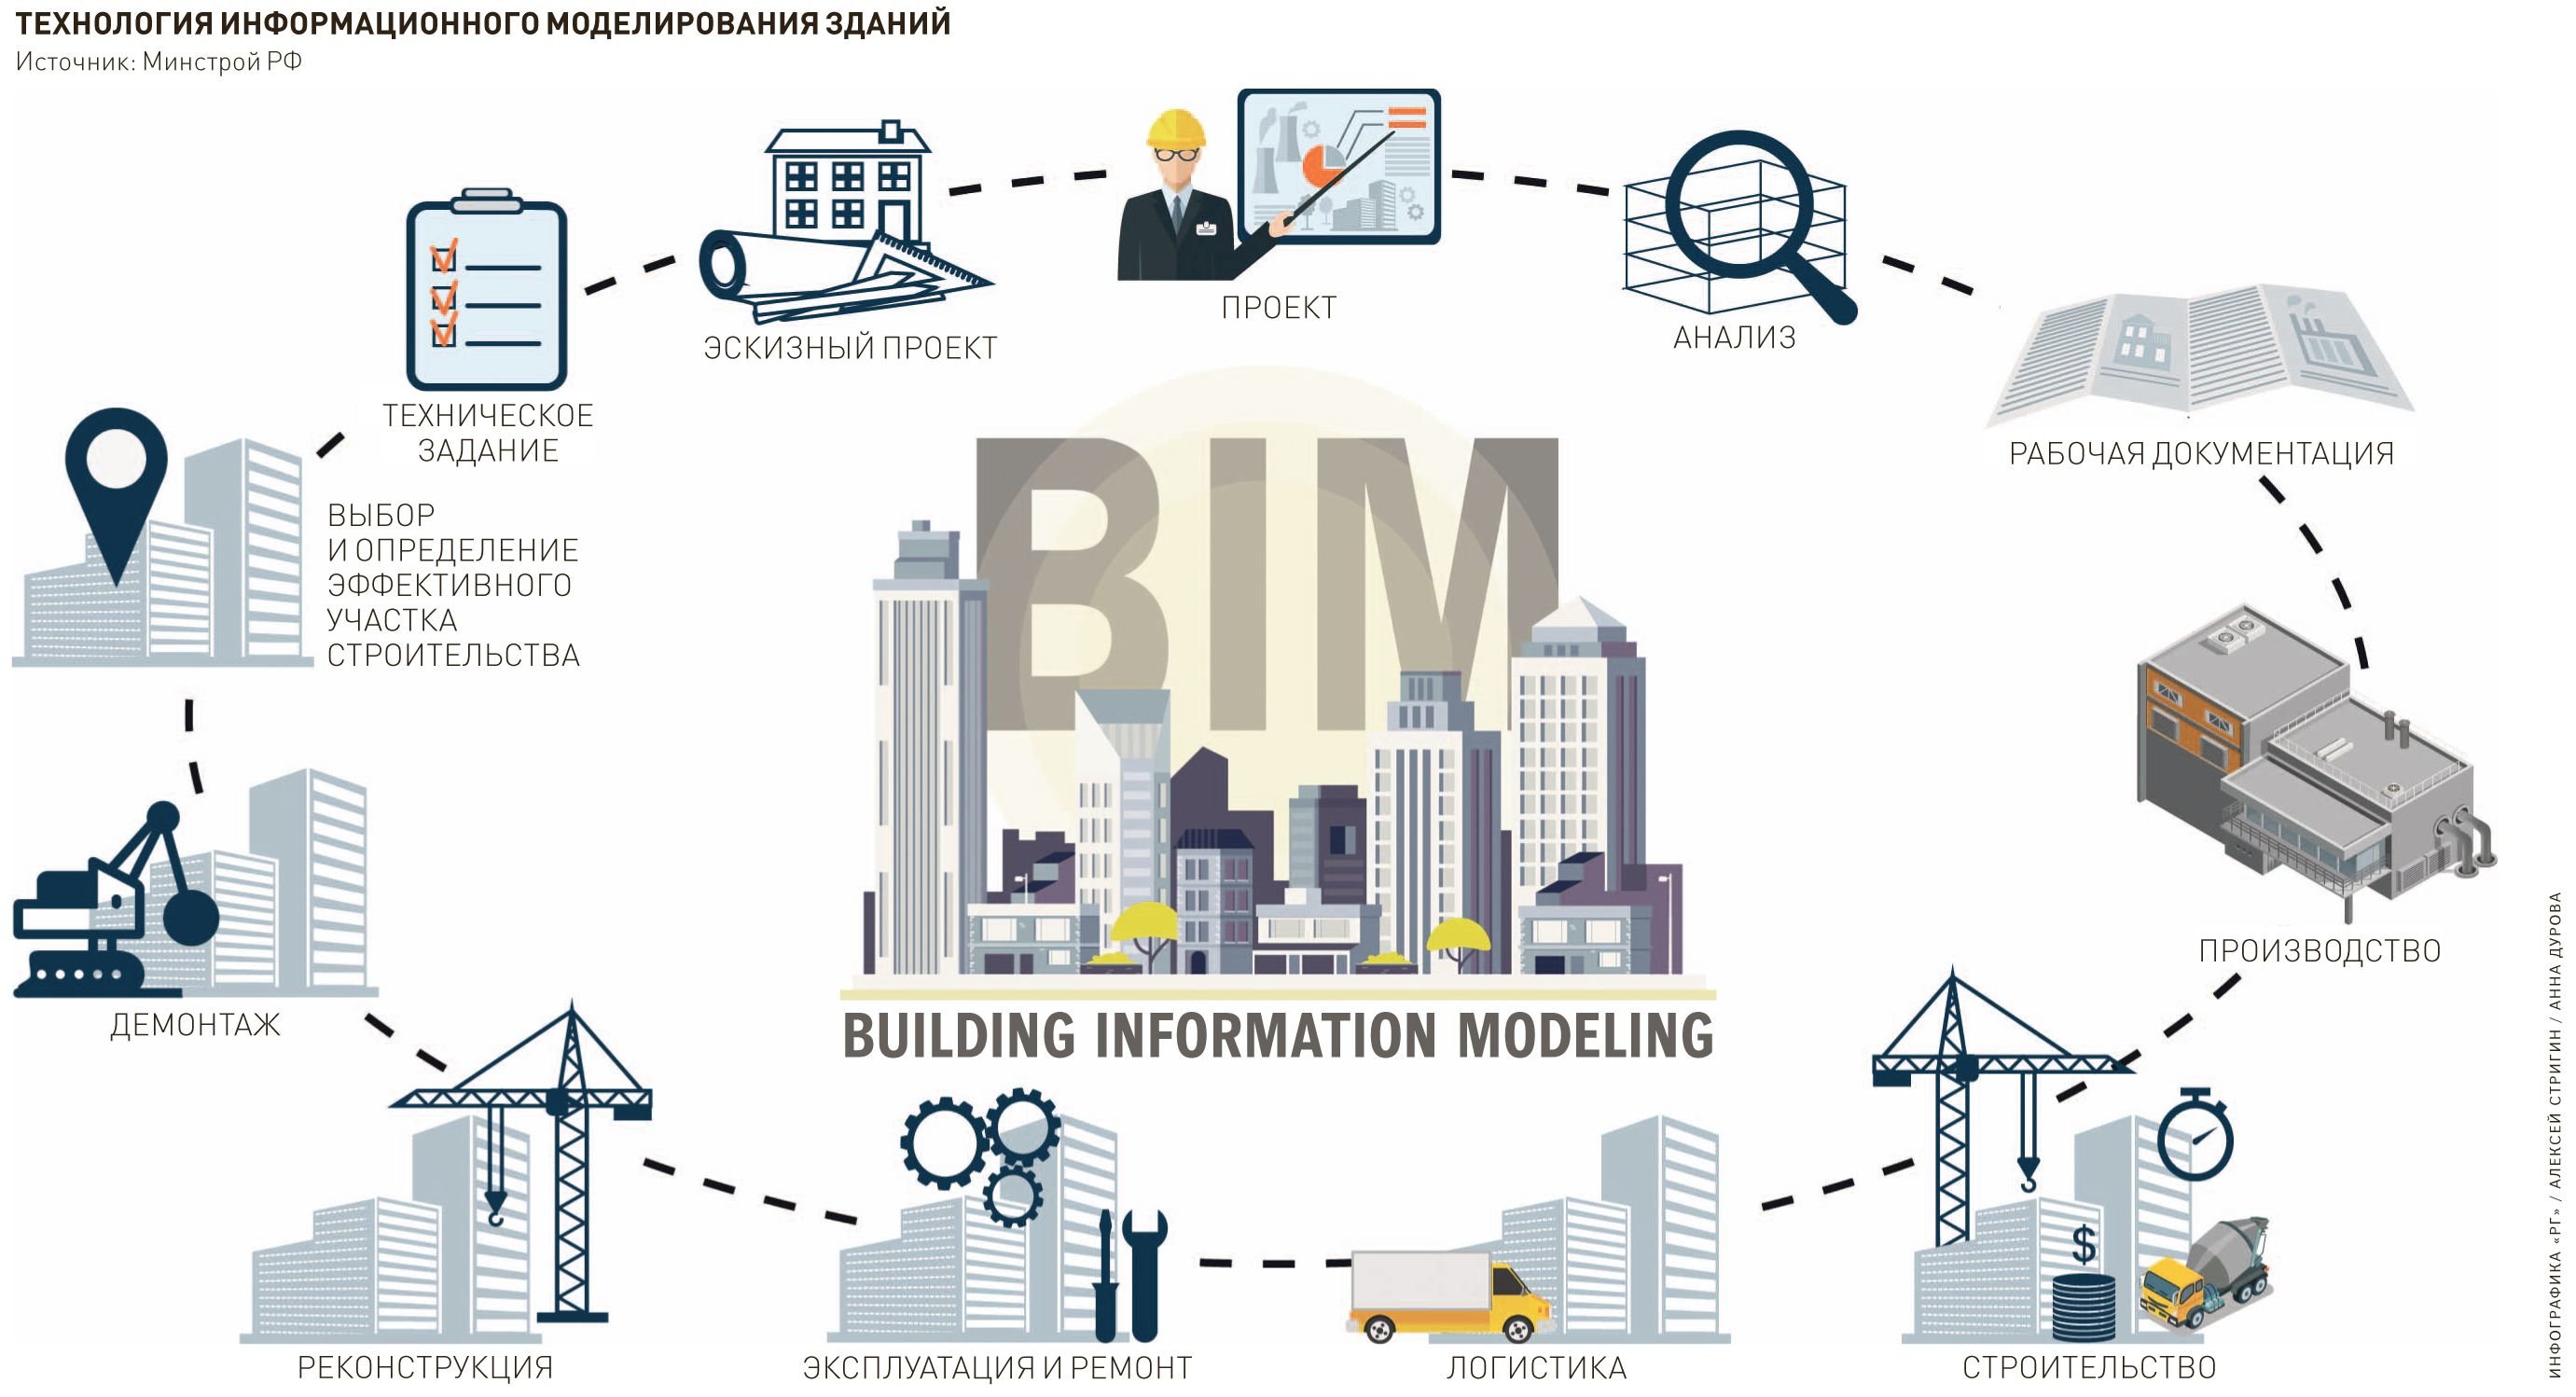 Ис строительной. Технологии информационного моделирования BIM. Информационная модель здания BIM. Проектирование информационной BIM модели. Технология информационного моделирования (building information Modeling, BIM).